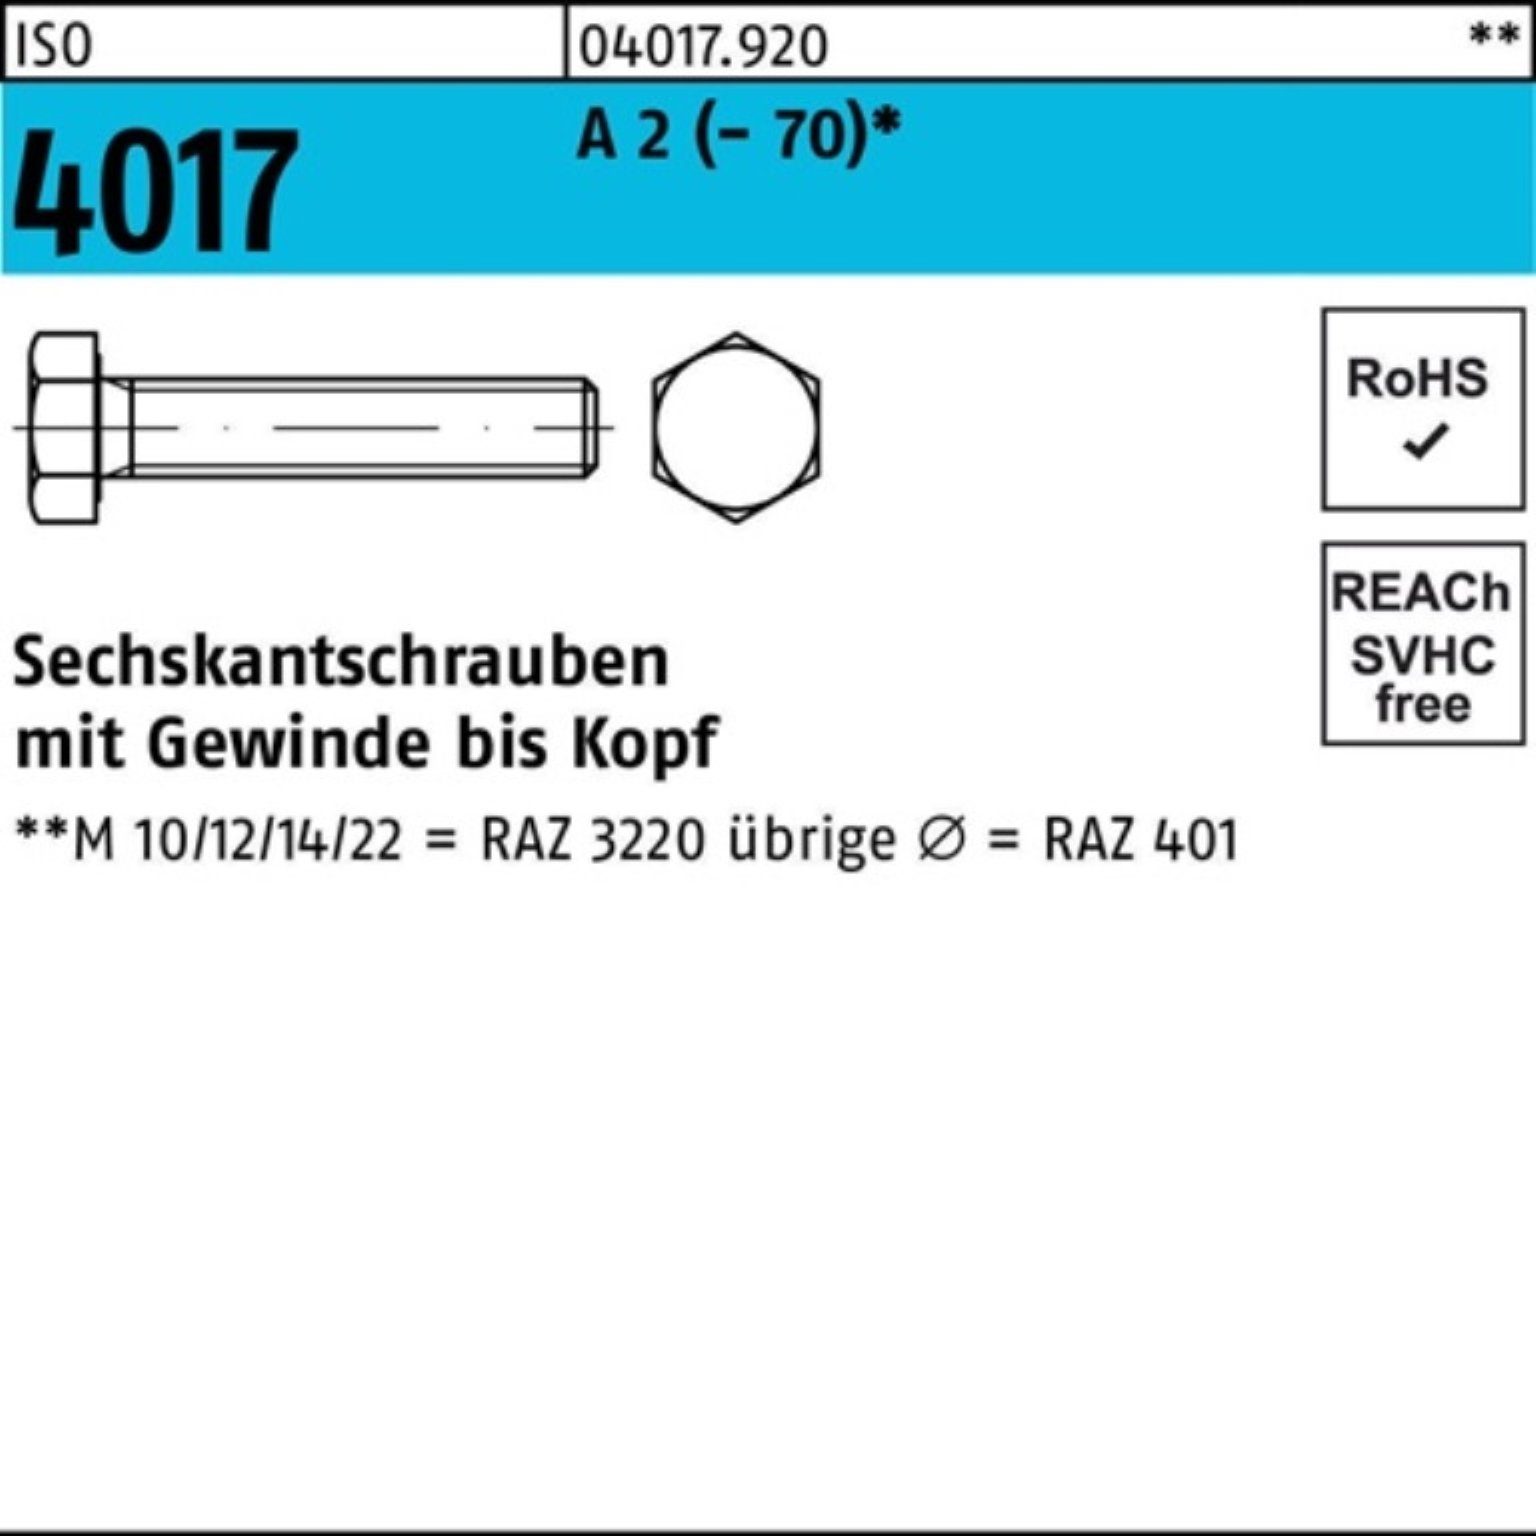 Bufab Sechskantschraube 100er Pack M16x (70) 45 4017 A 50 2 Sechskantschraube ISO VG Stück